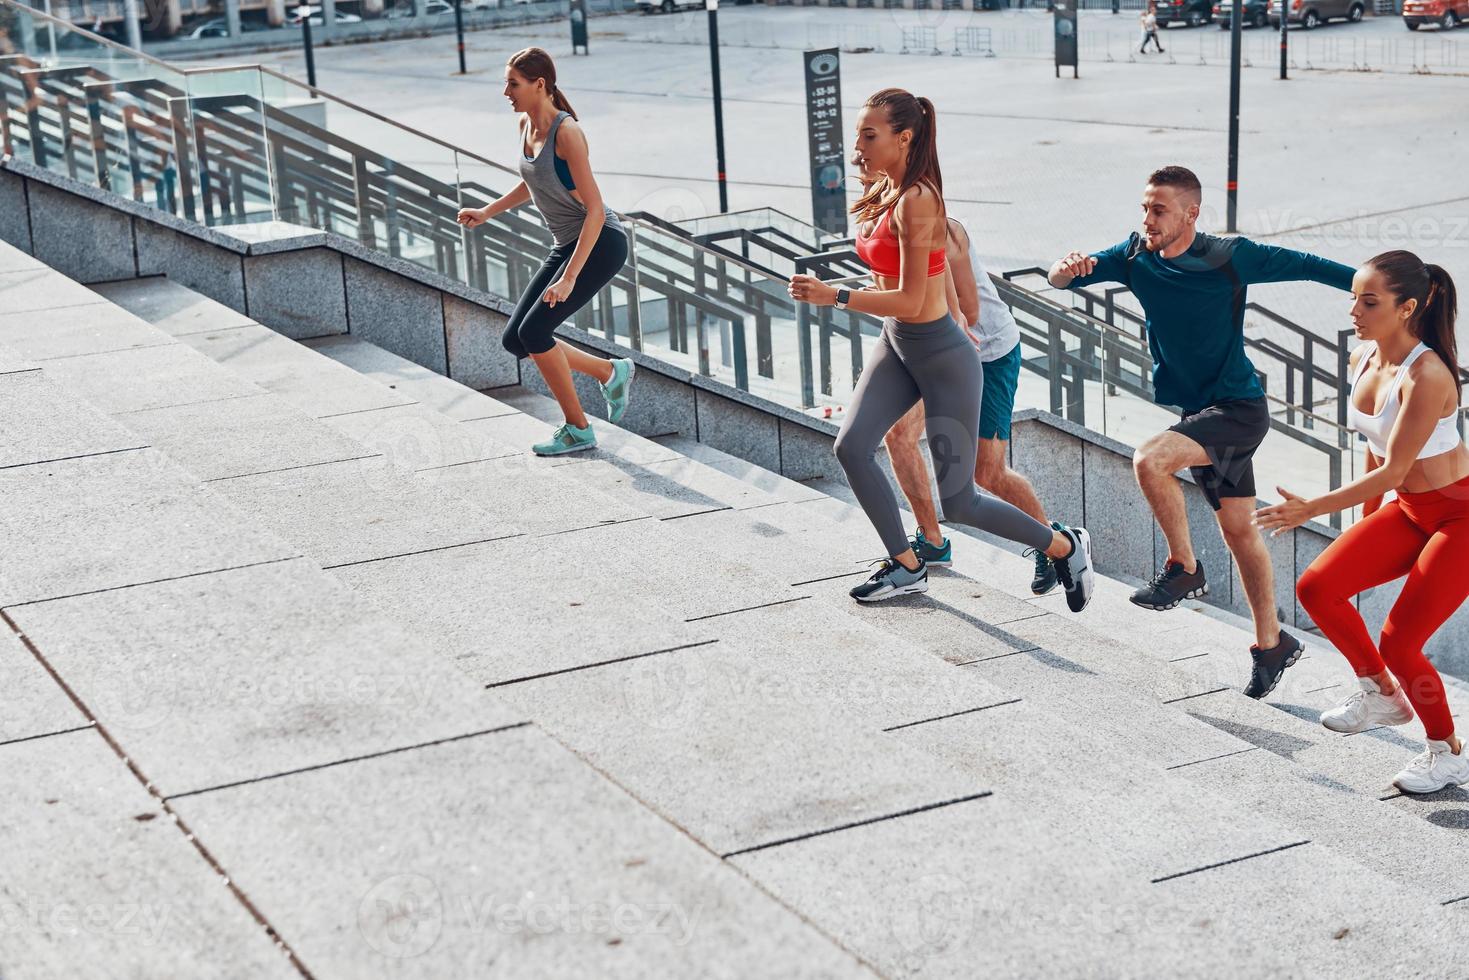 grupp av ung människor i sporter Kläder joggning medan utövar på de trappa utomhus foto